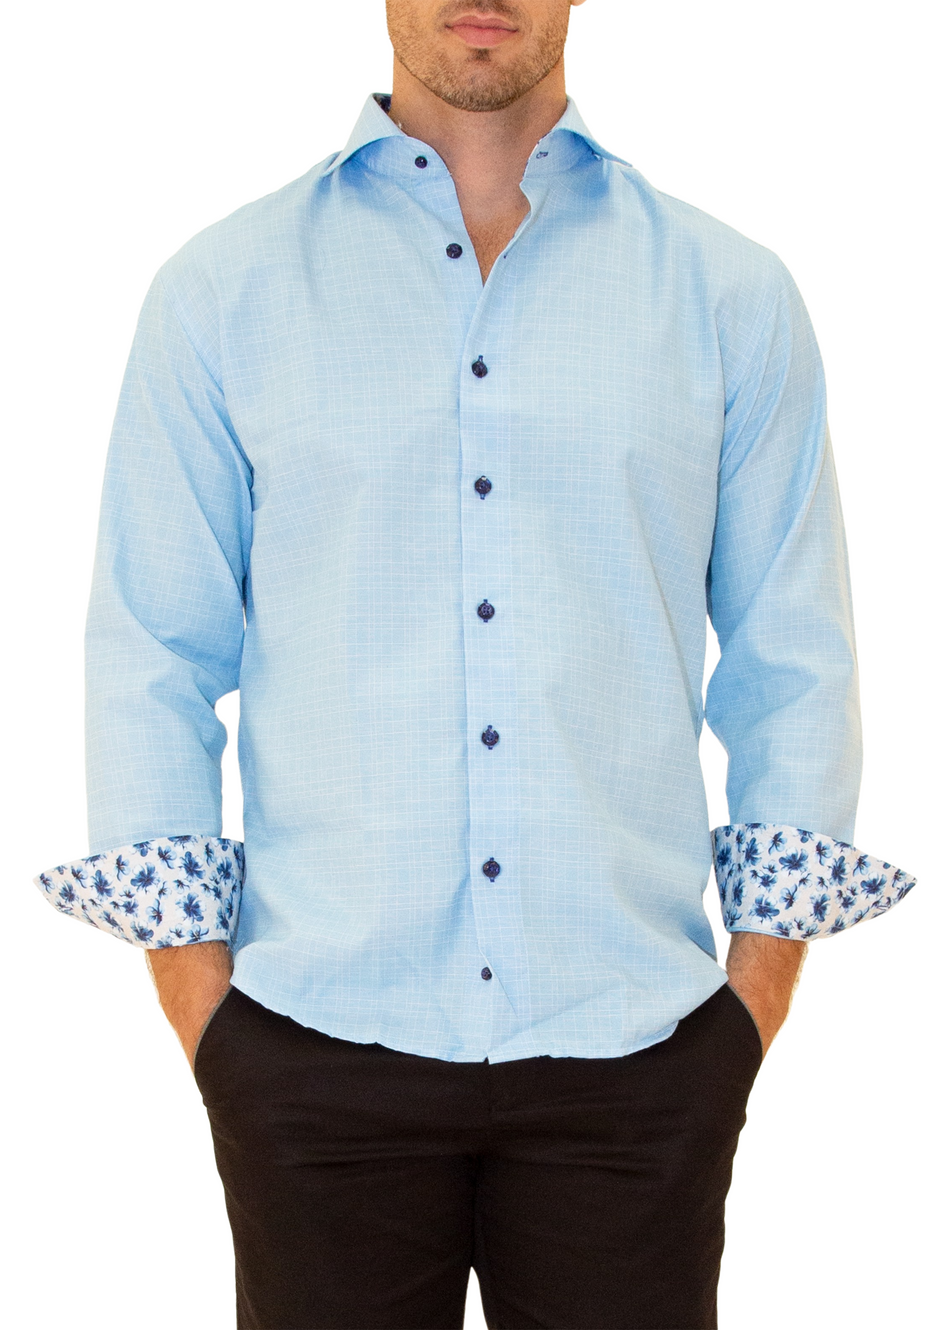 Linen Texture Floral Cuff Long Sleeve Dress Shirt Turquoise